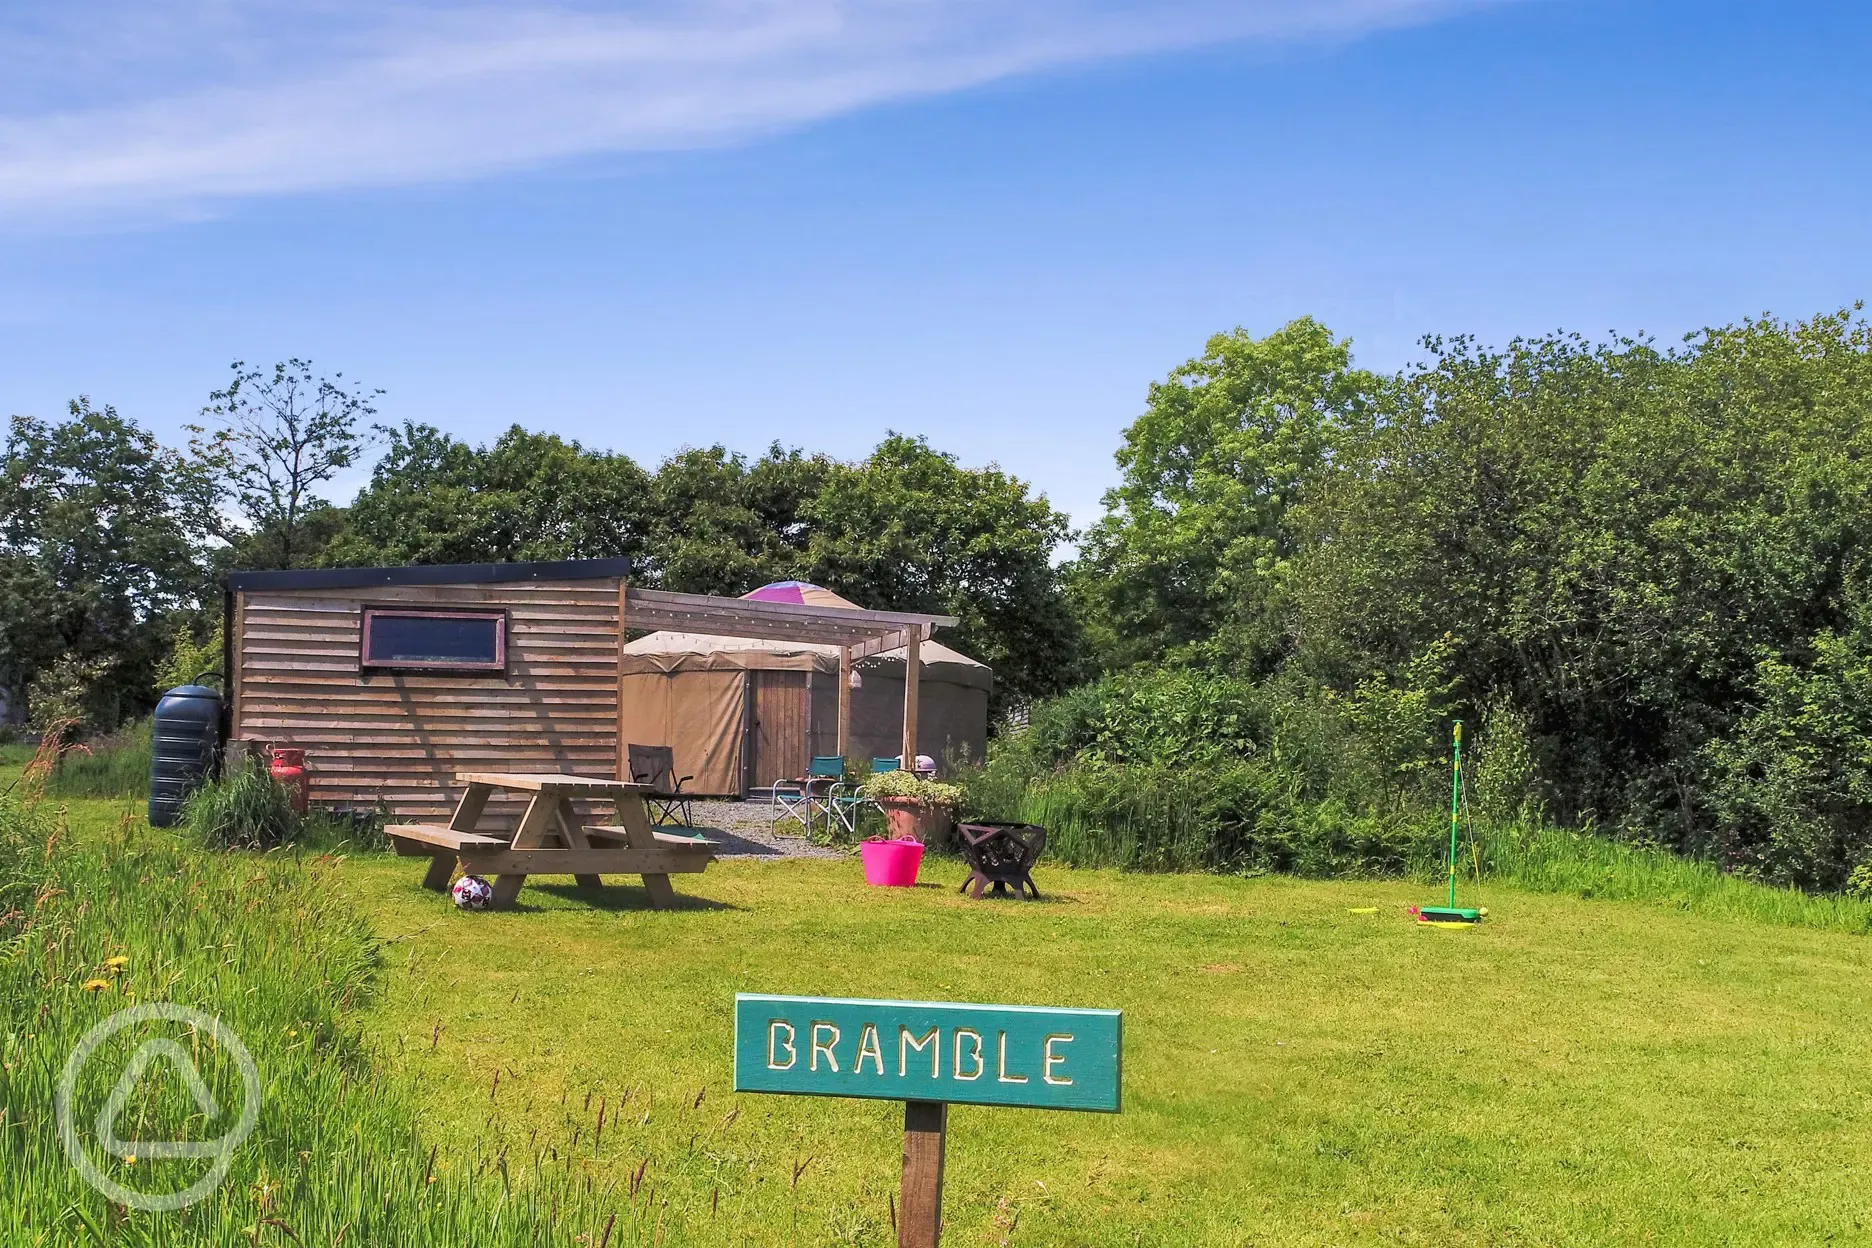 Bramble yurt